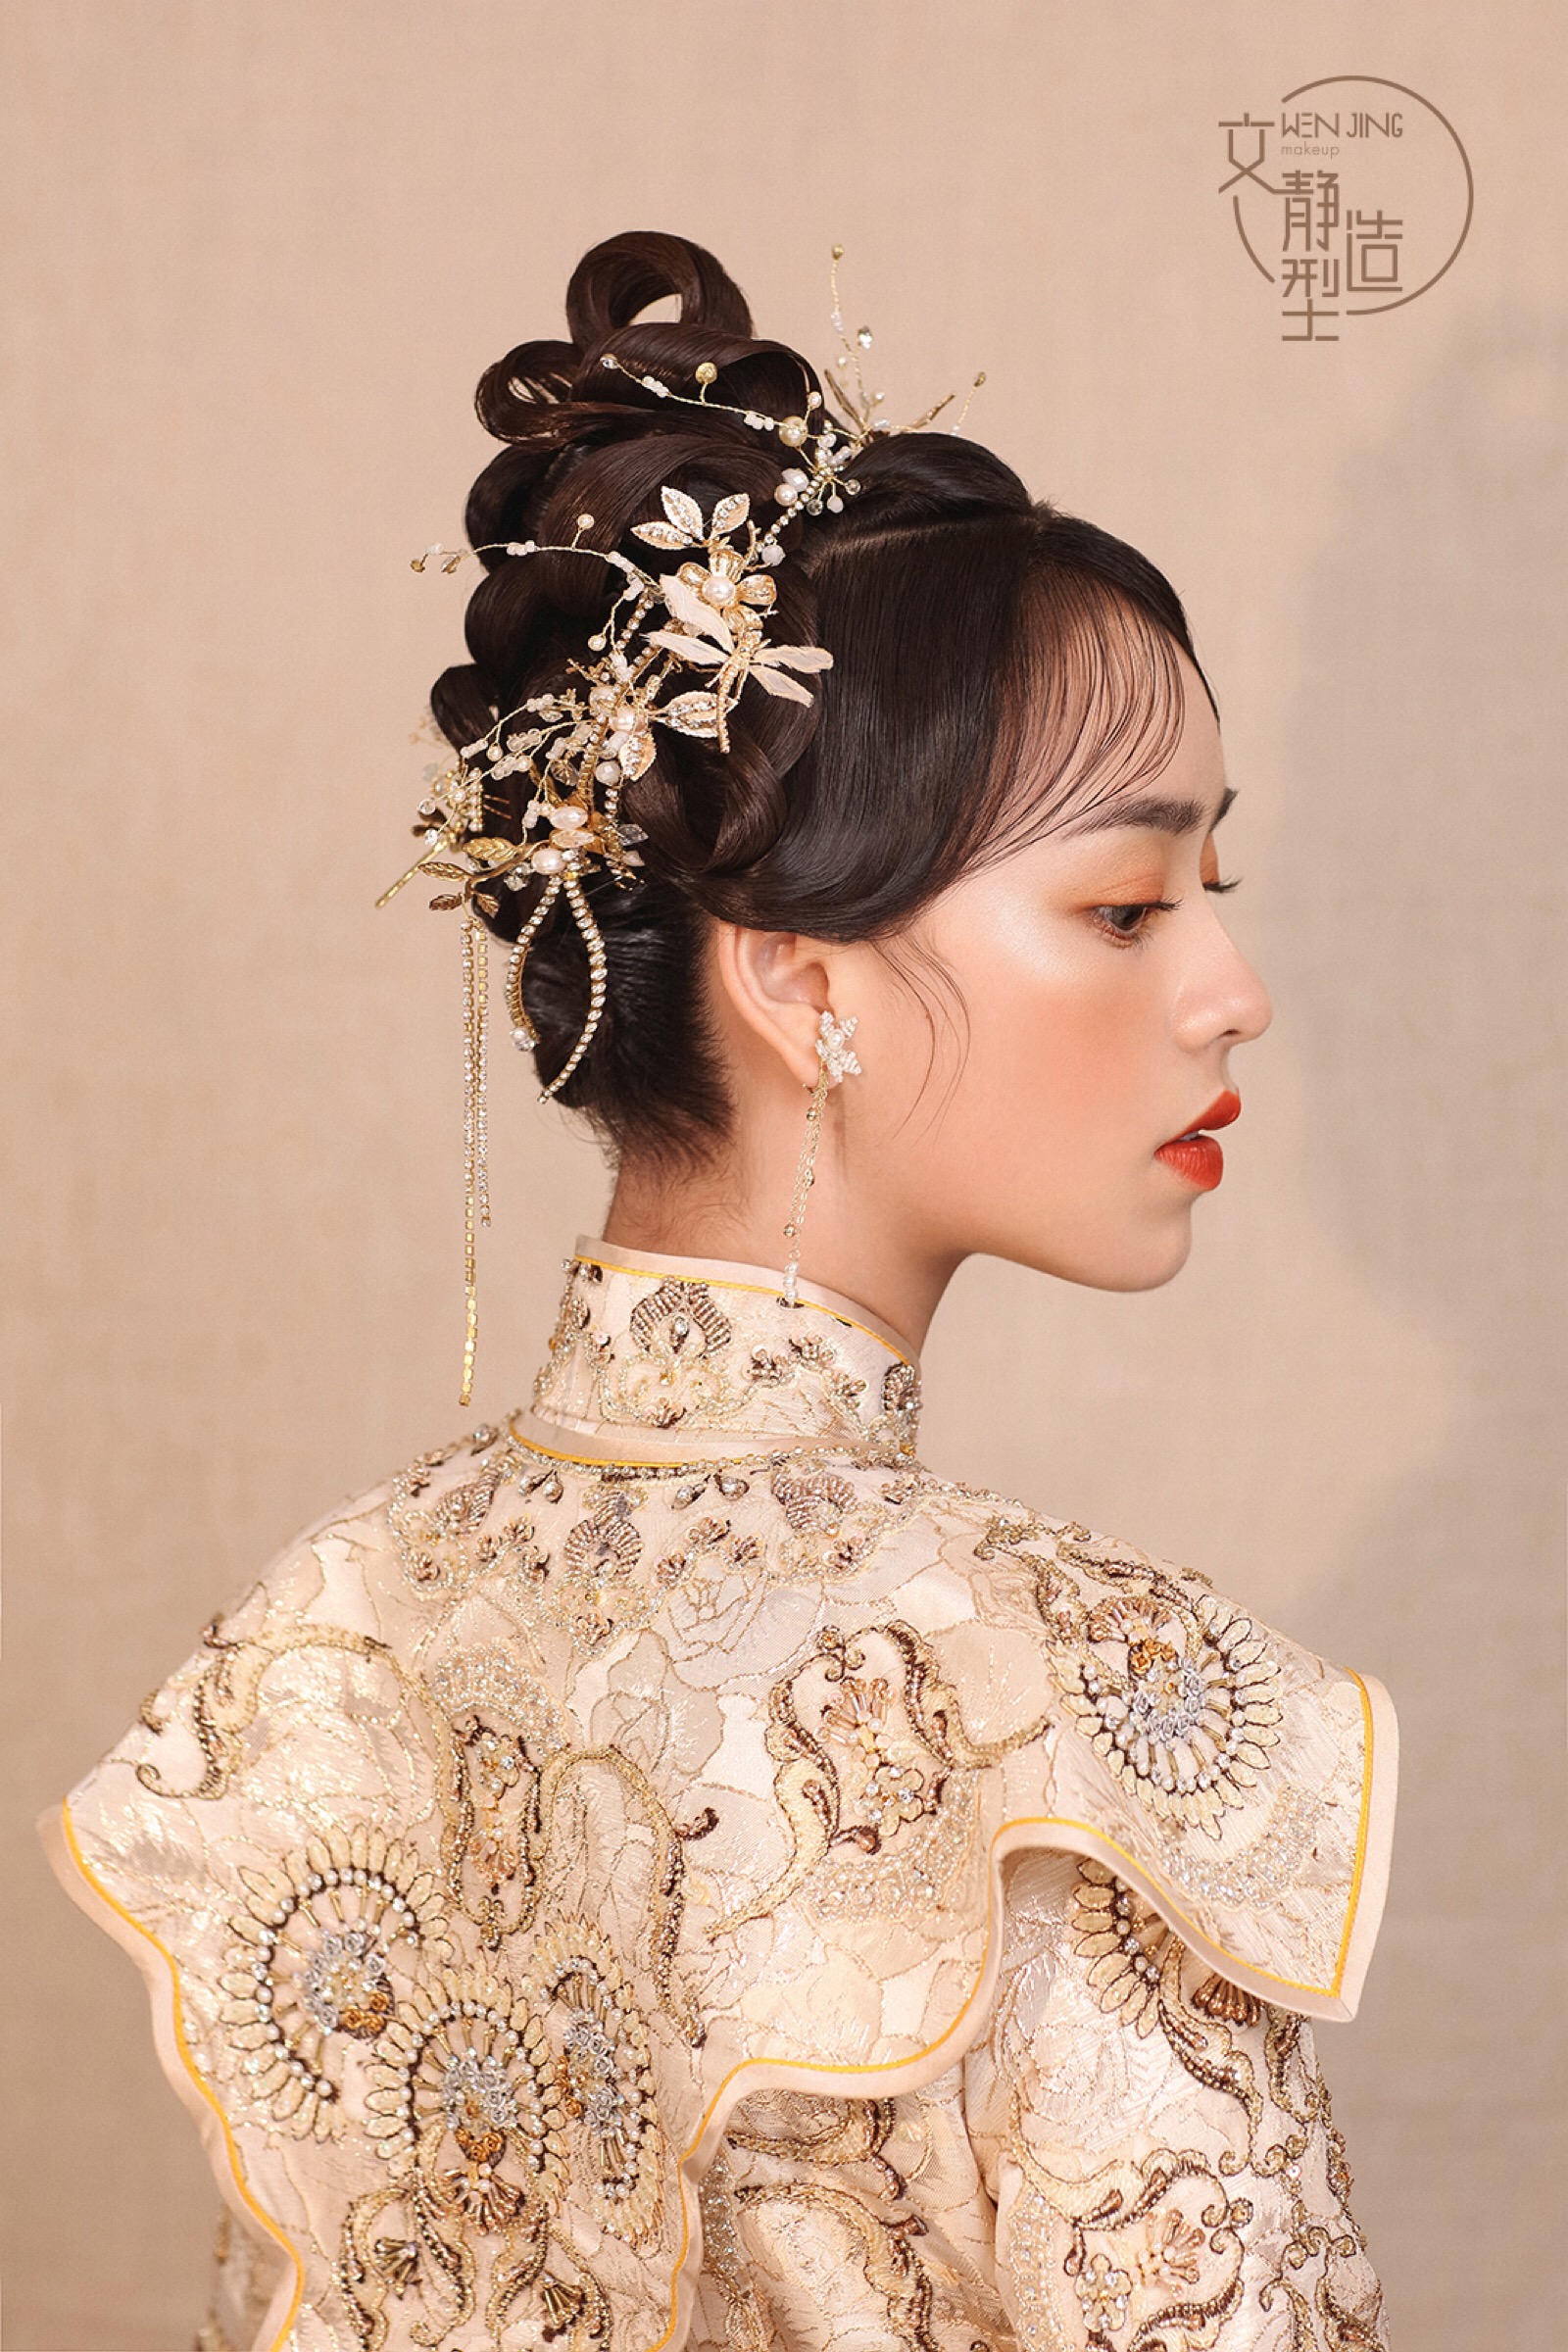 中式新娘造型 中式卷筒造型 新娘造型 新娘发型 新娘化妆 清浅中式